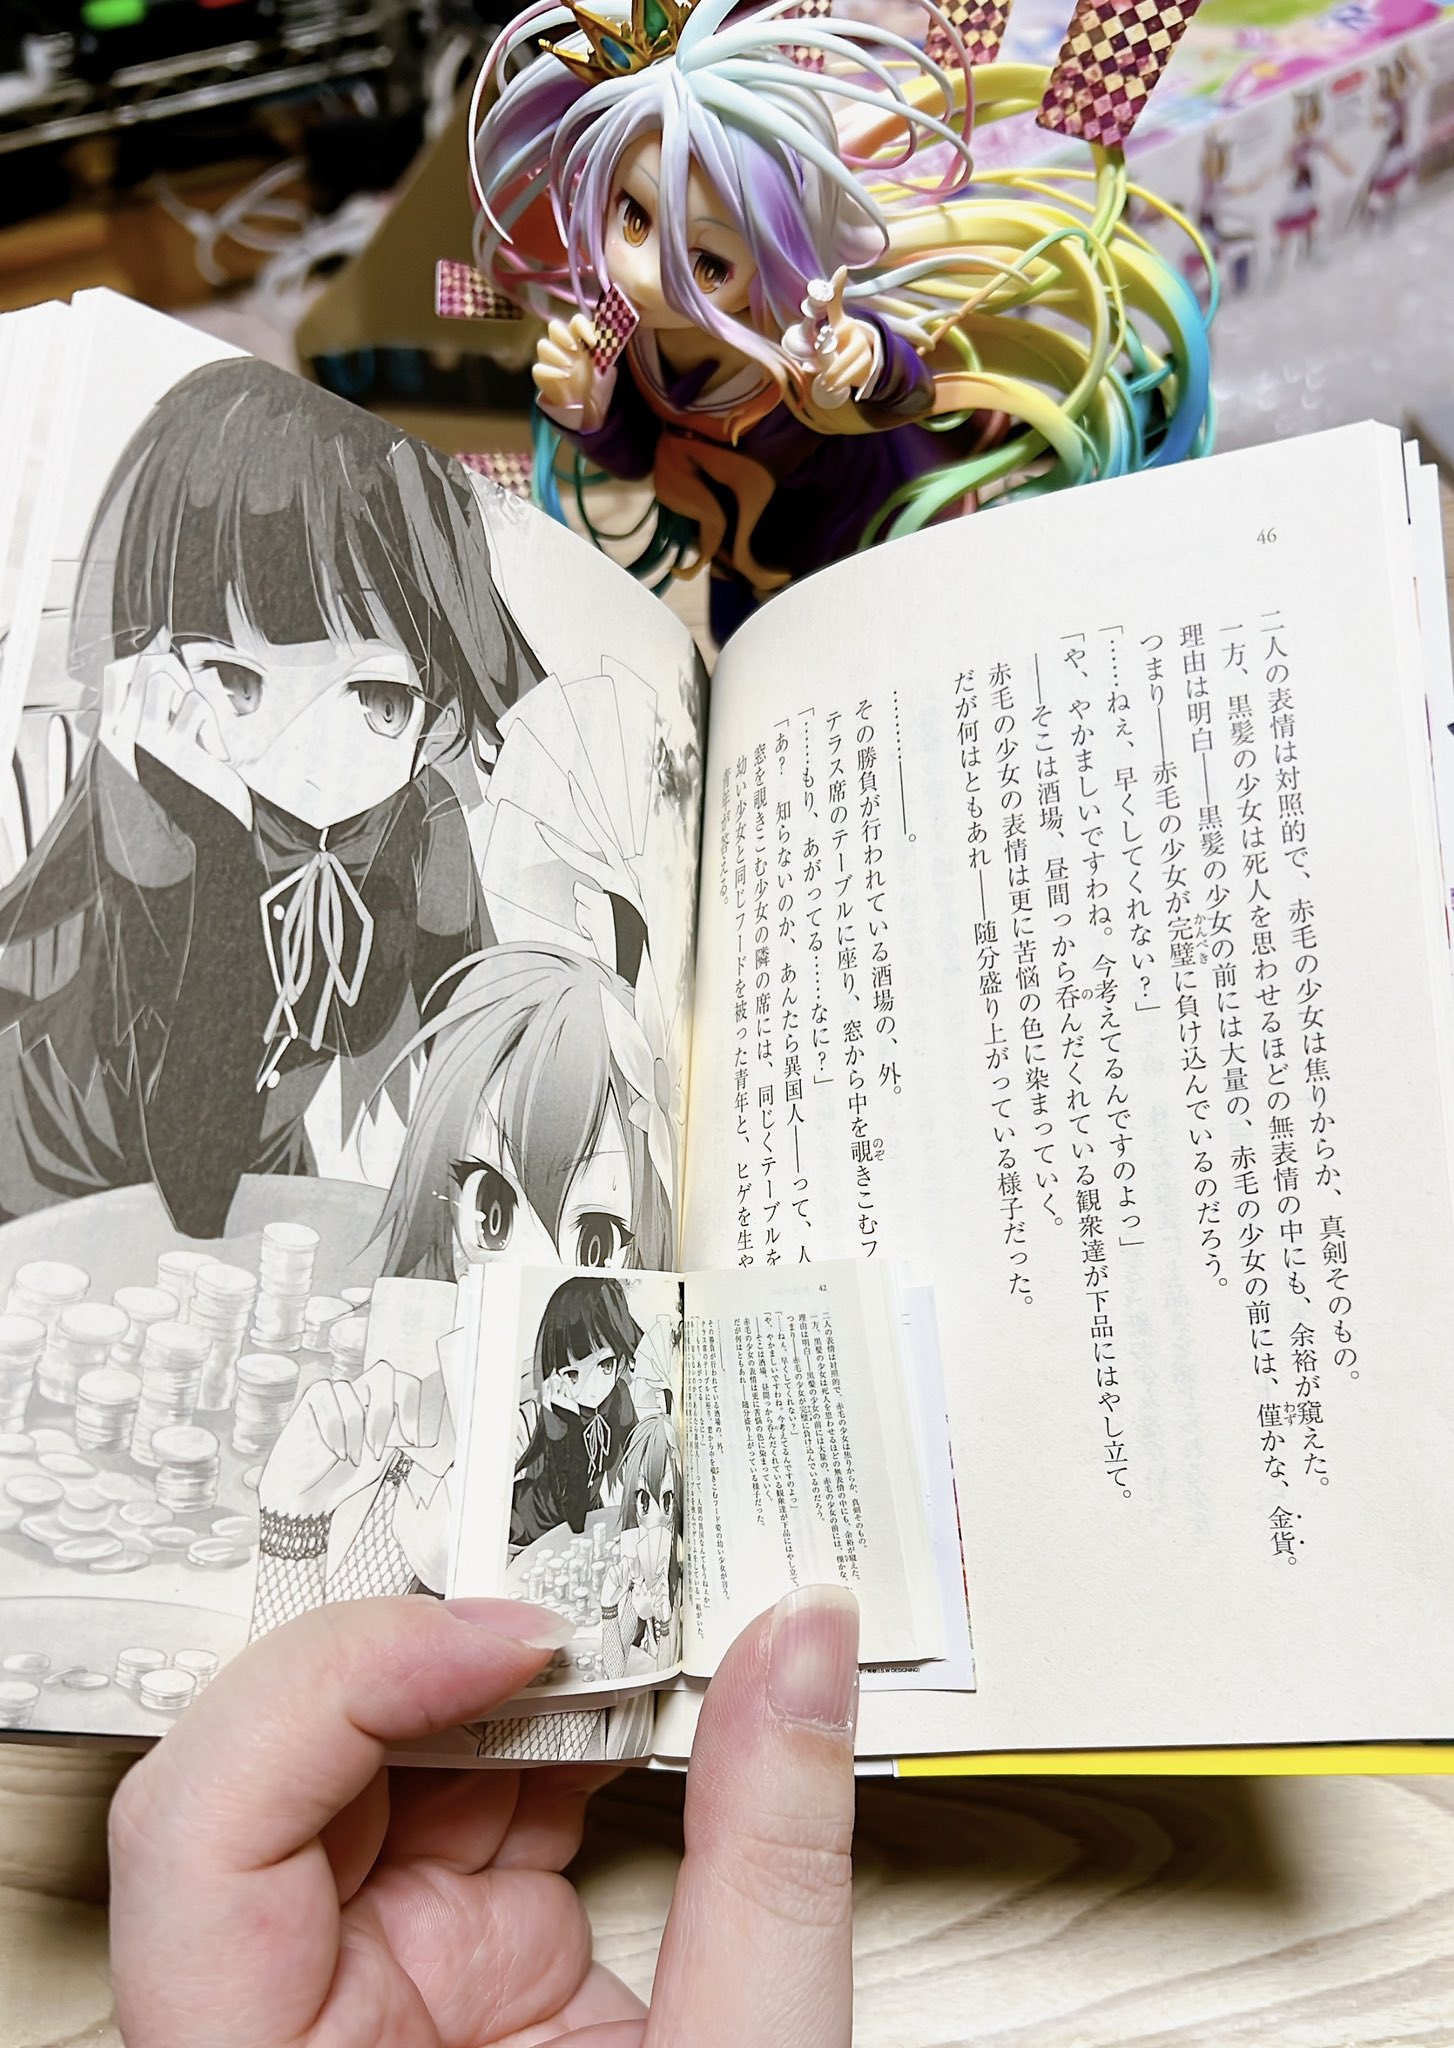 比轻小说还“轻”的 日人生小说 日本网友从扭蛋中开出微缩版《游戏人生》第一卷全本